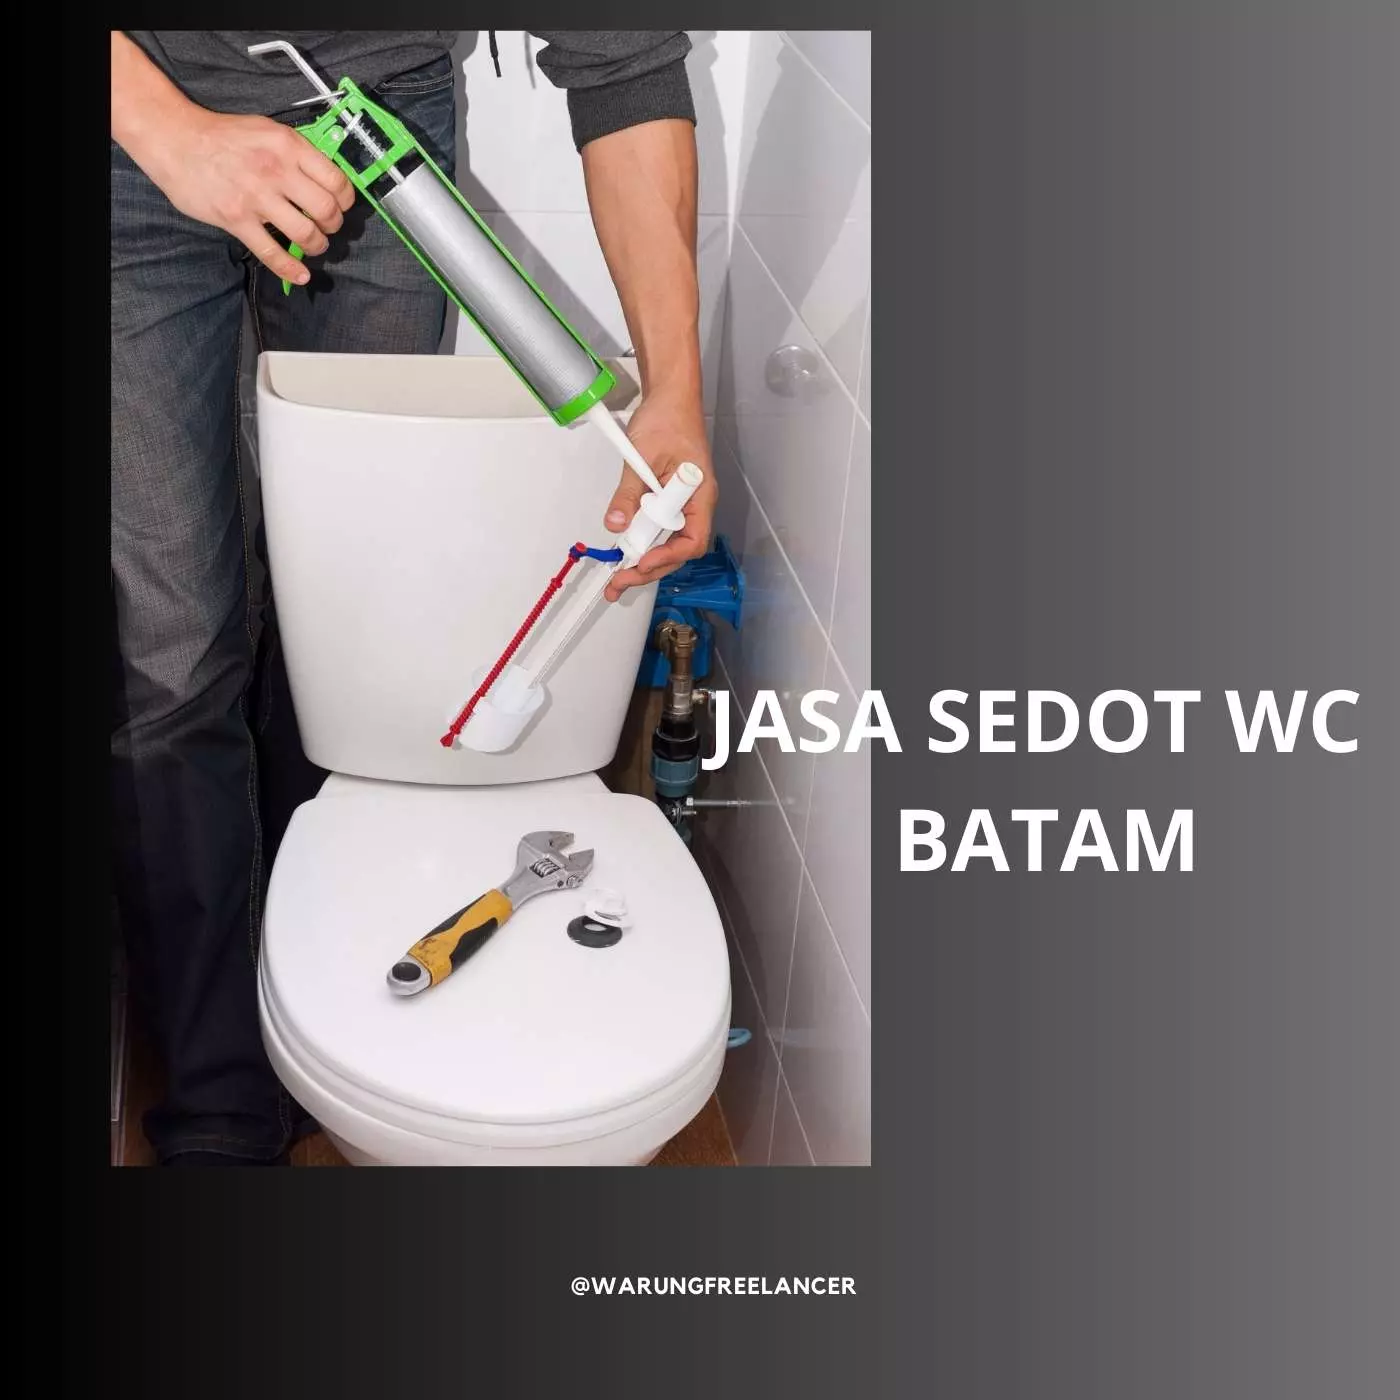 Batam WC Suction Services